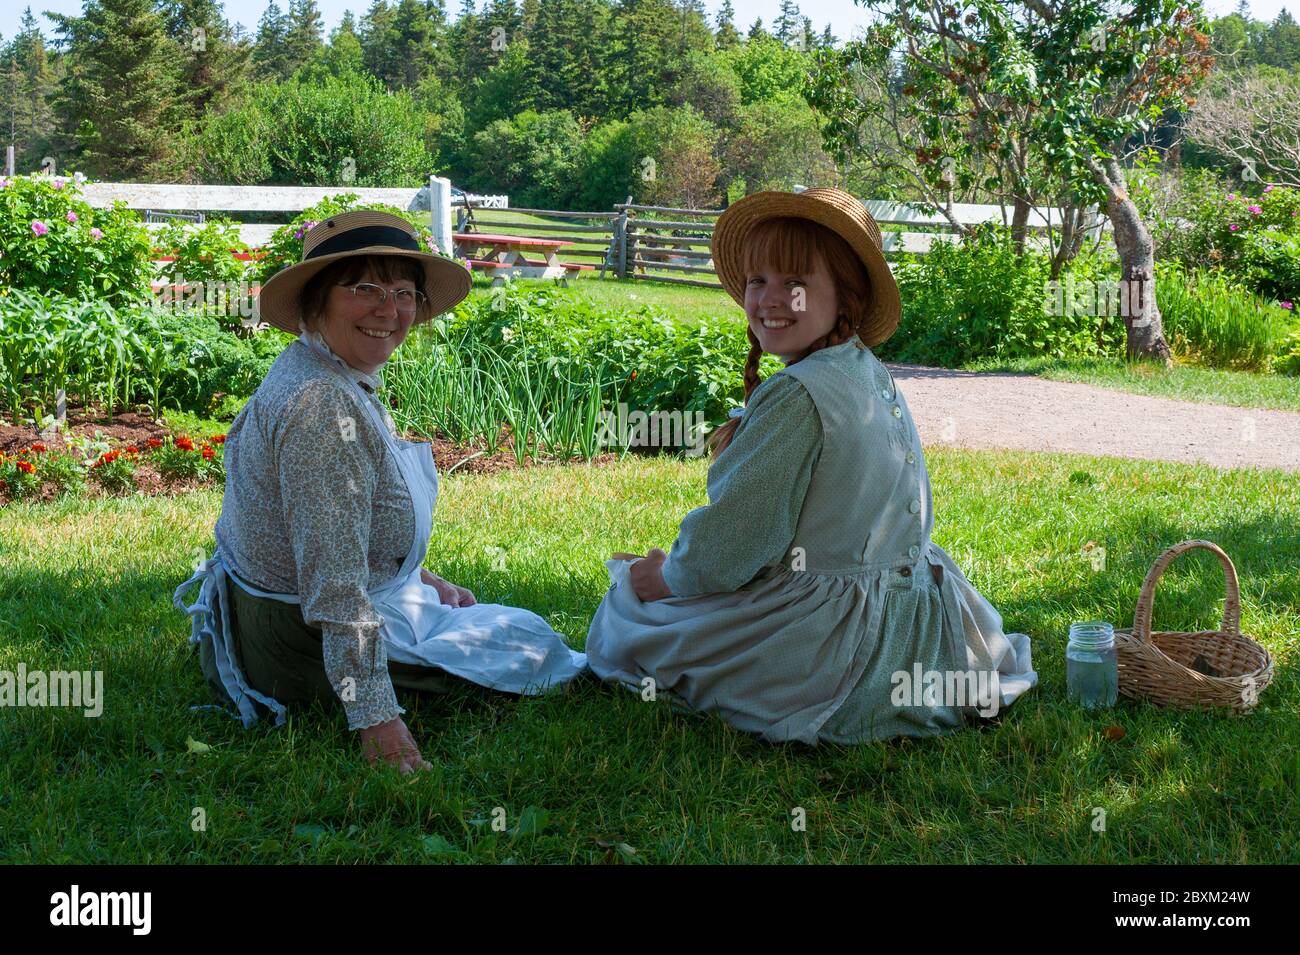 Attori nei personaggi di Anne Shirley (Anna di Green Gables) e Marilla Cuthbert. Green Gables Heritage Place, Cavendish, PEI, Canada Foto Stock